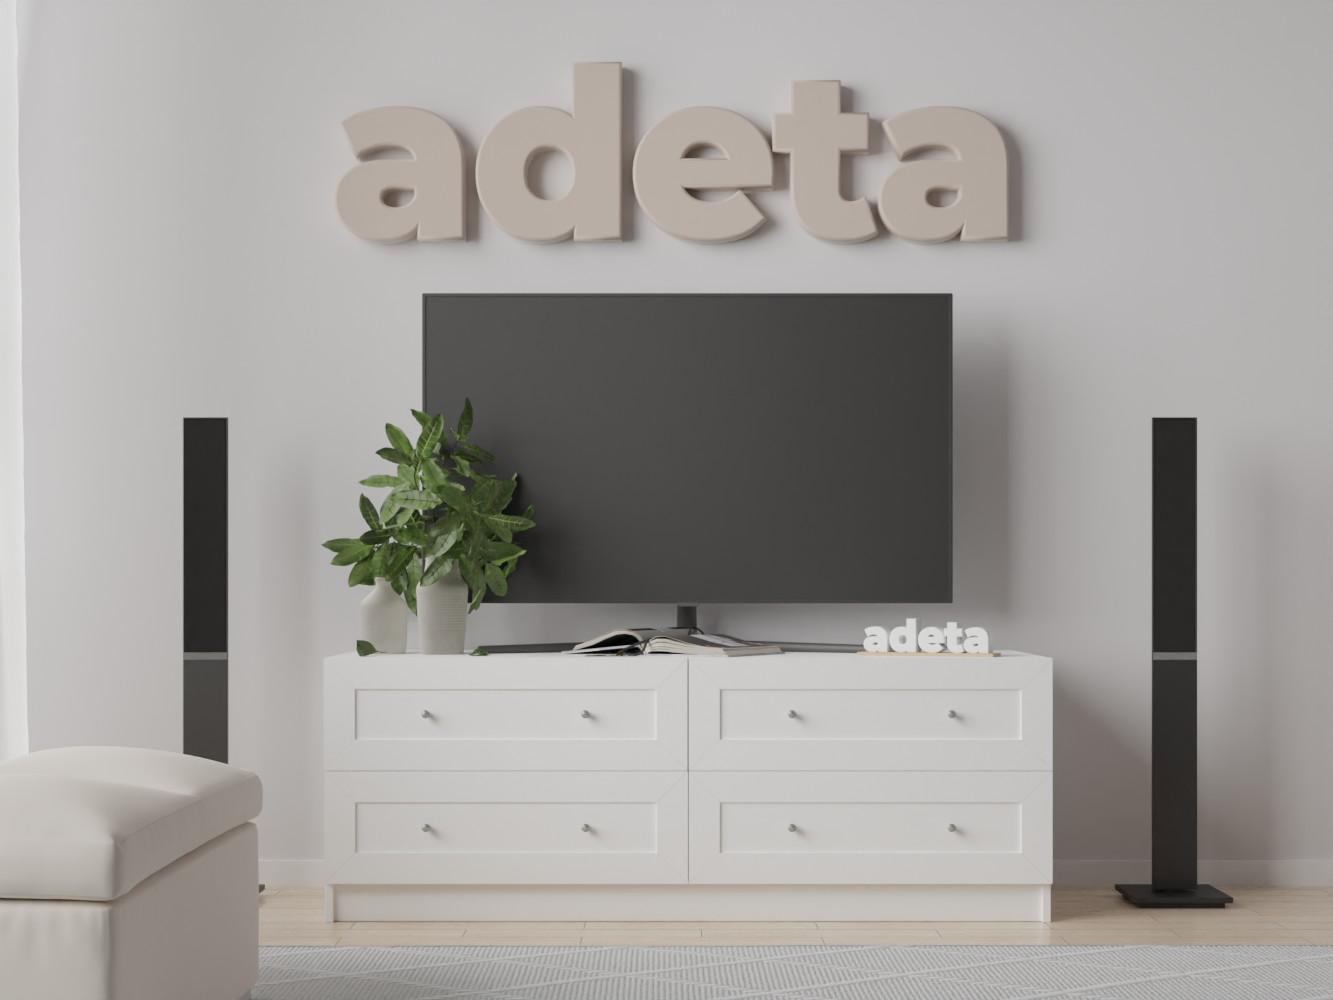 Изображение товара Тумба под телевизор Билли 520 white ИКЕА (IKEA), 180x50x50 см на сайте adeta.ru